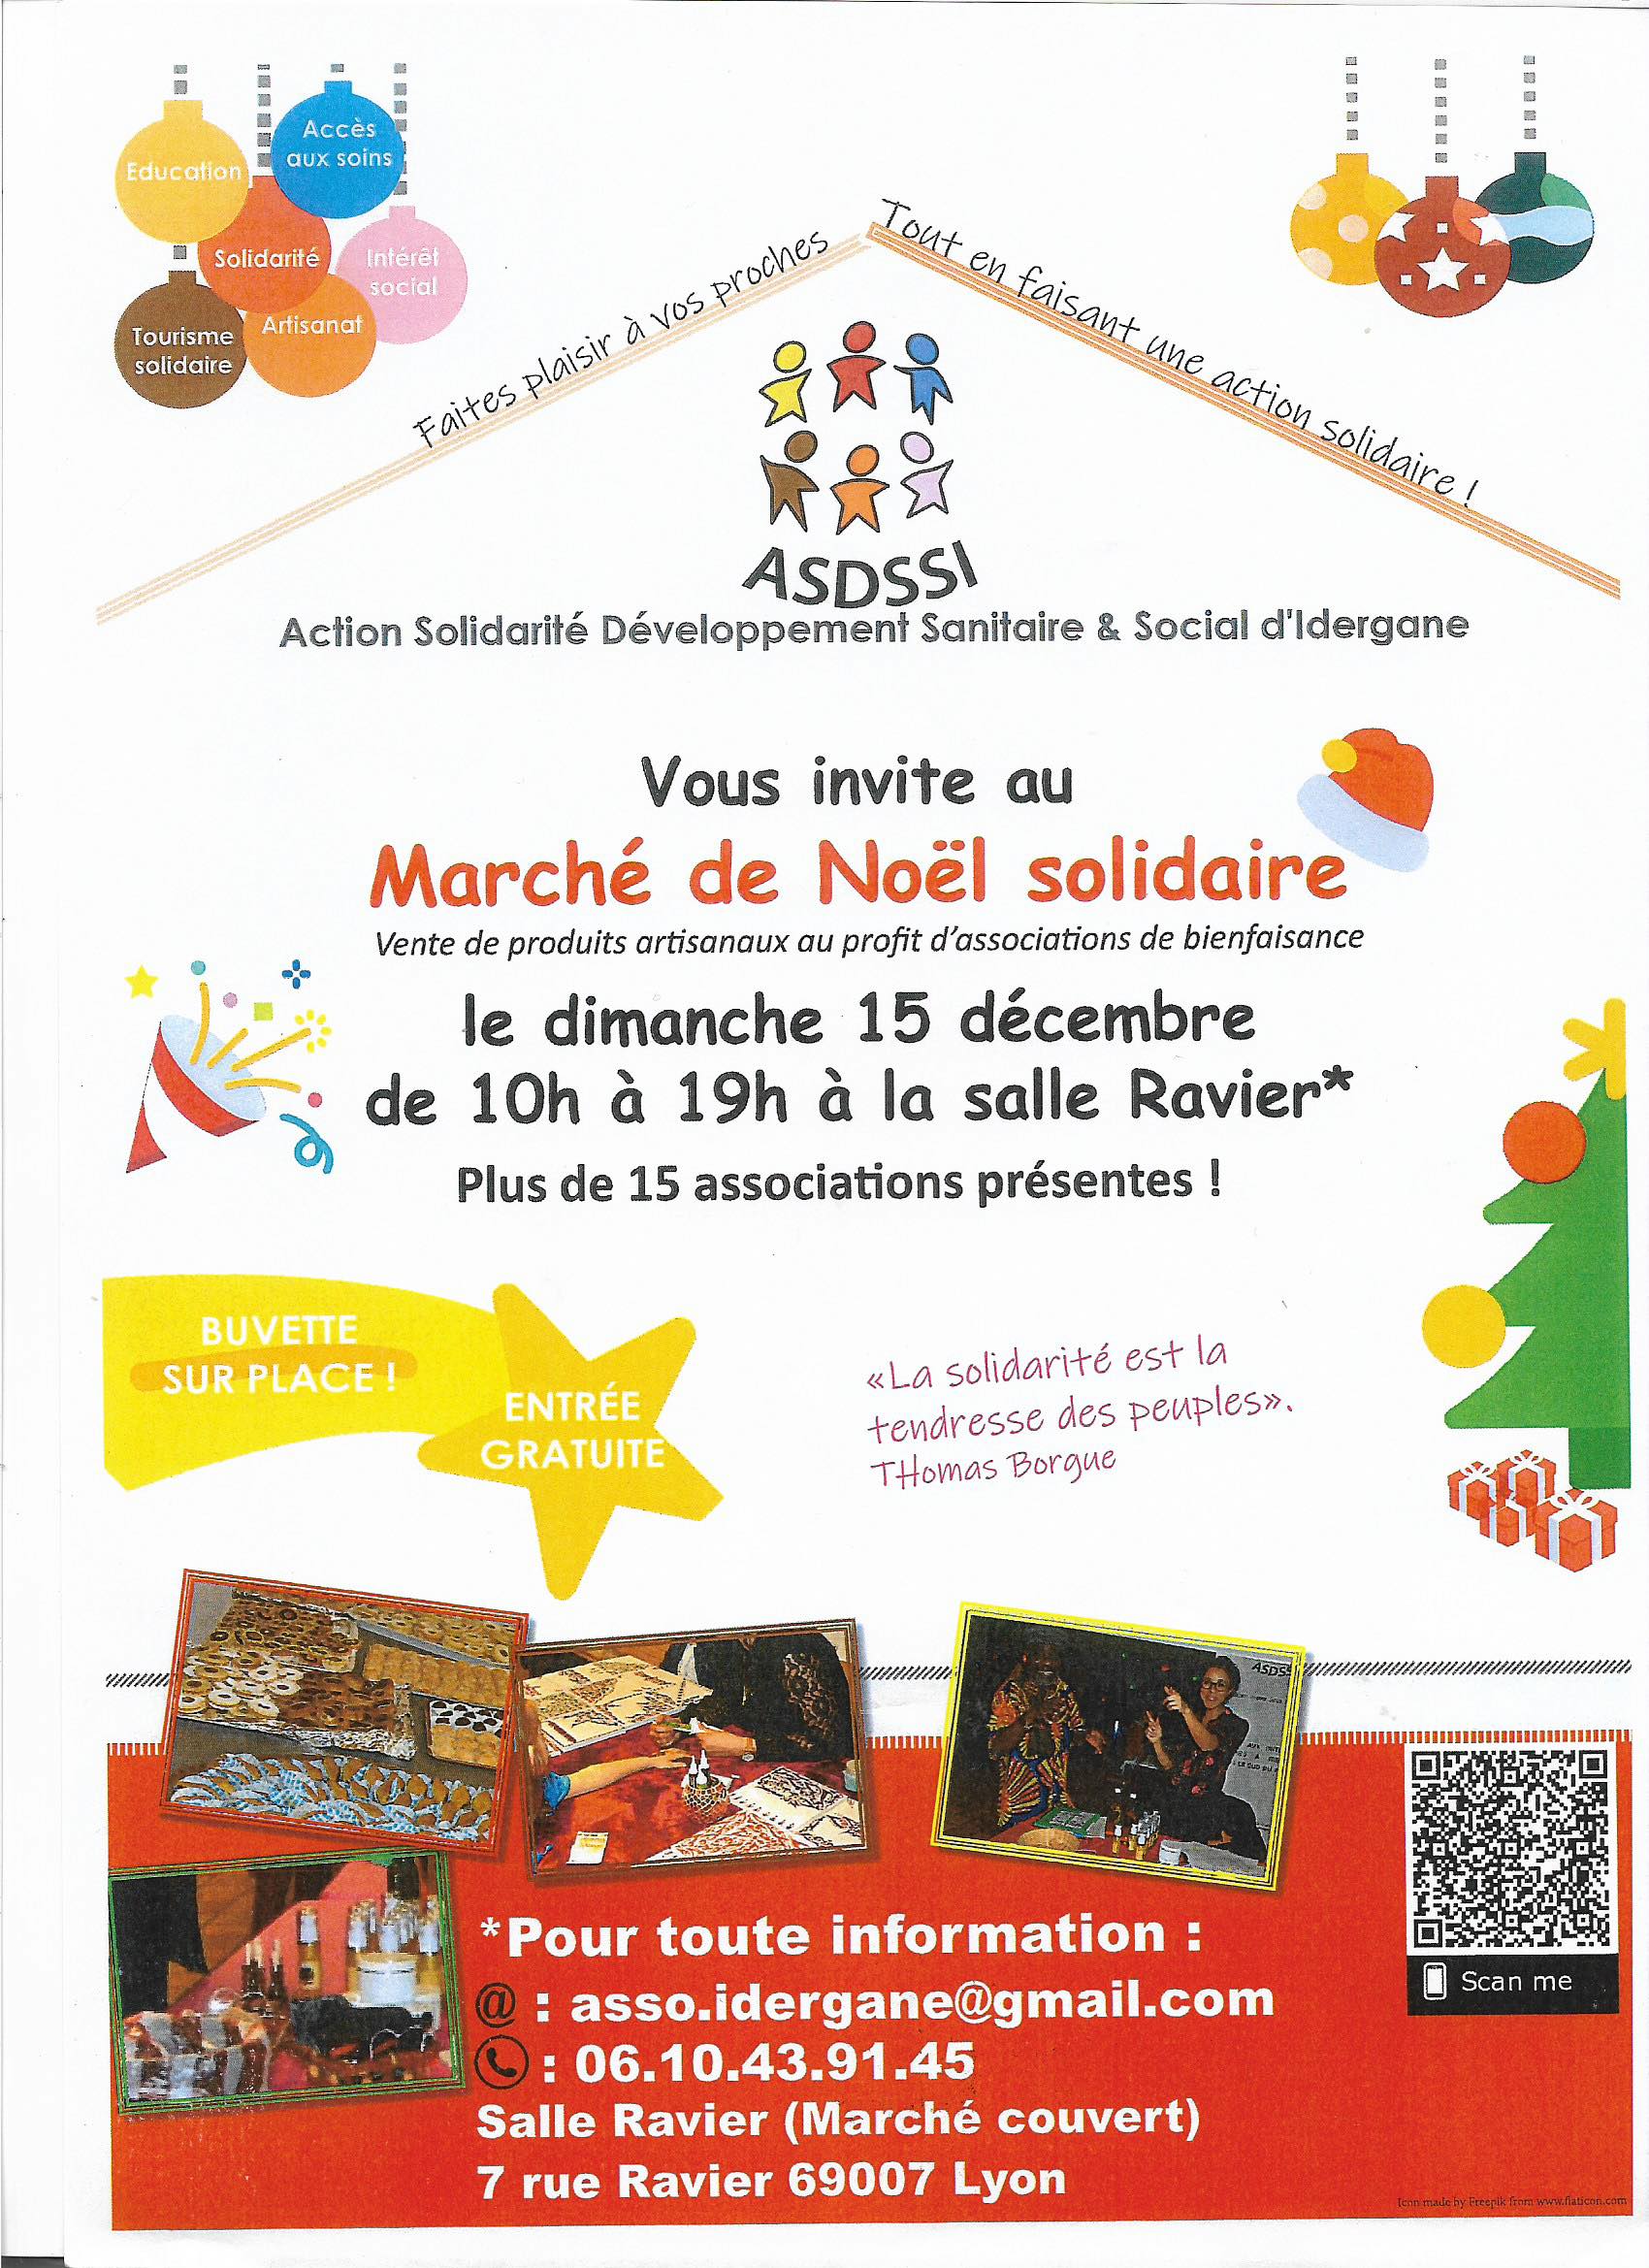 Marché de Noël associatif et solidaire organisé par l'ASDSSI